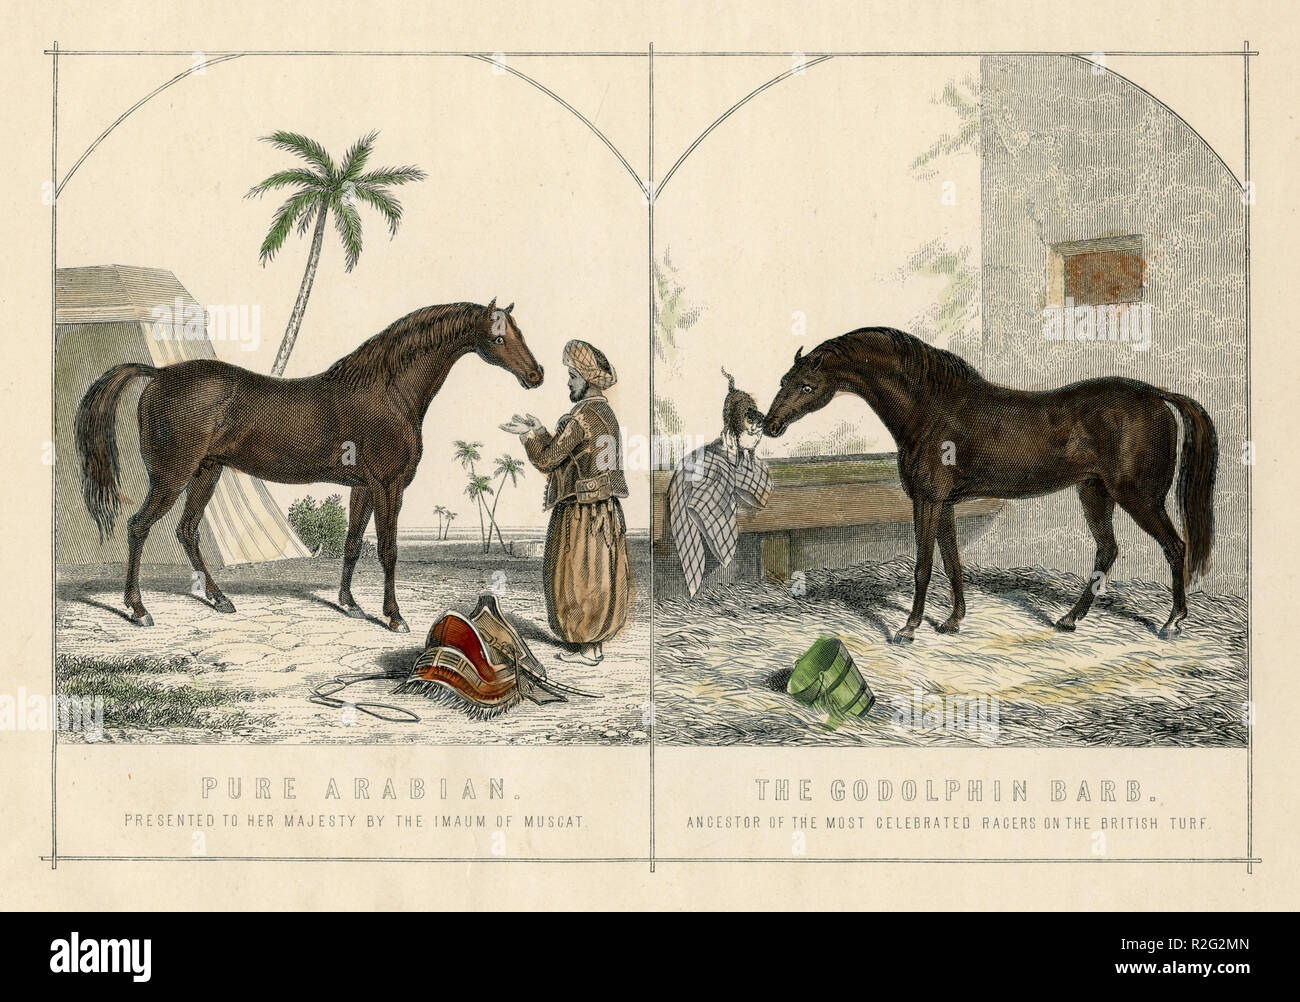 Arabische Pferde: die "Reine" 1001. Ihrer Majestät der Imaum von Muscat' (links) und Godolphin Arabian oder Godolphin Barb (* Ca. 1724/1725; † Dezember 1753), Hengst, "Die Godolphin Barb. Vorfahren der gefeierten Racers auf dem britischen Rasen.', William Mackenzie Stockfoto